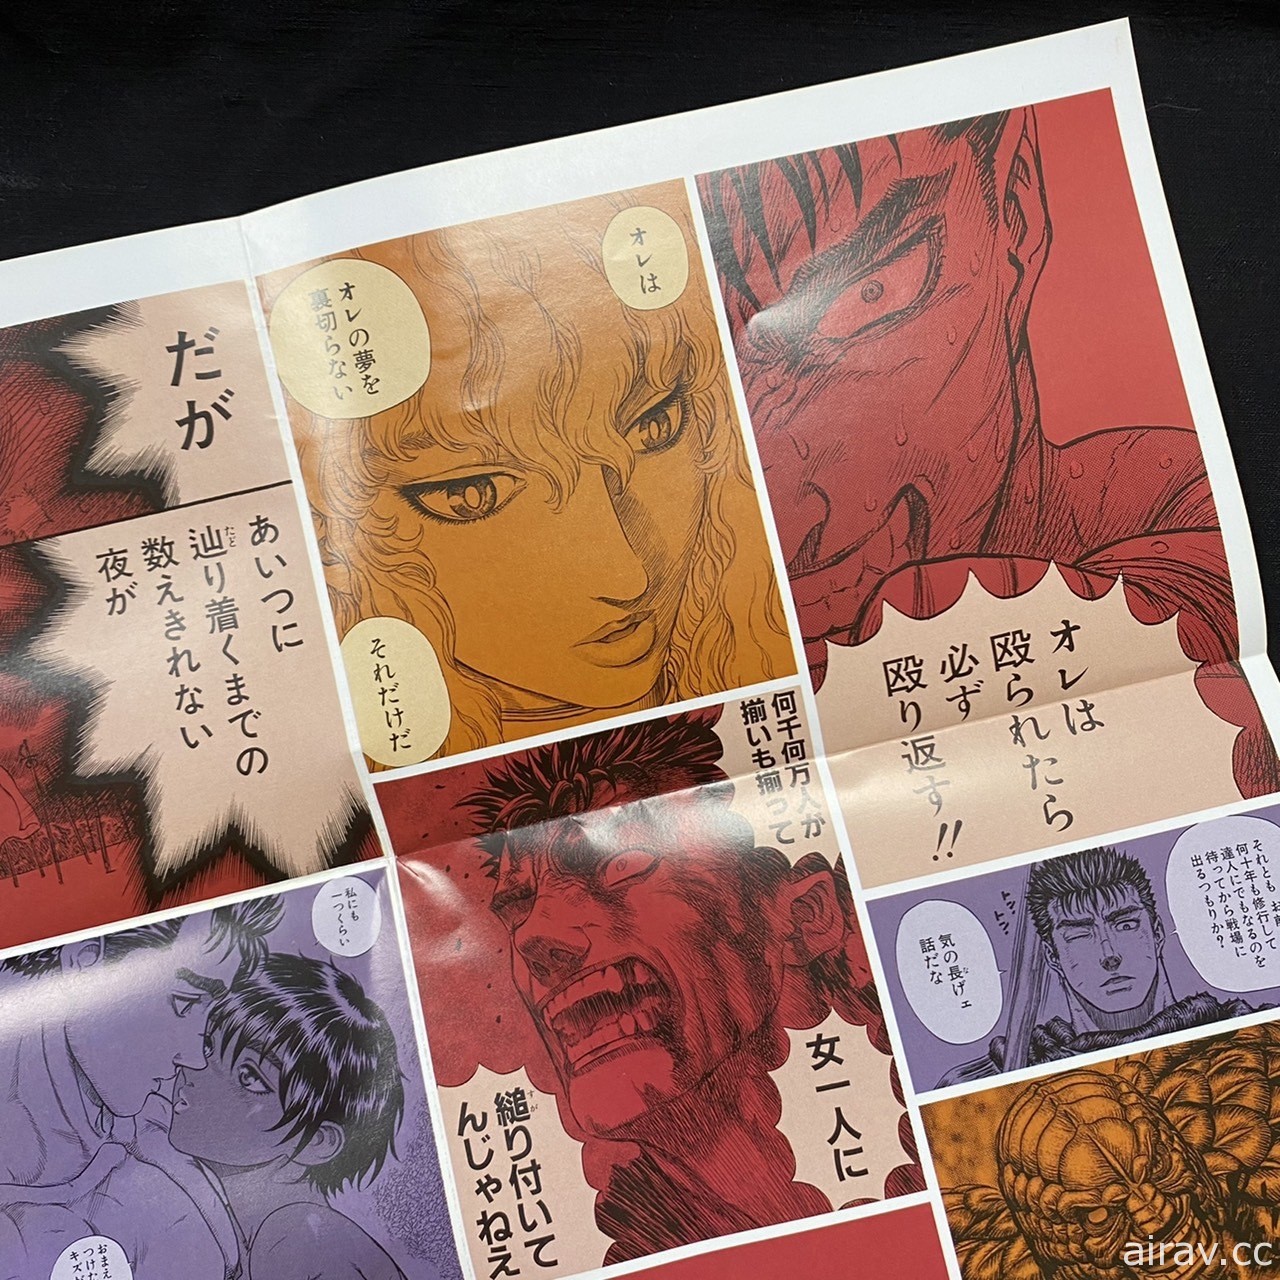 《烙印勇士》单行本第 41集与日本同步出版 特设官网公开